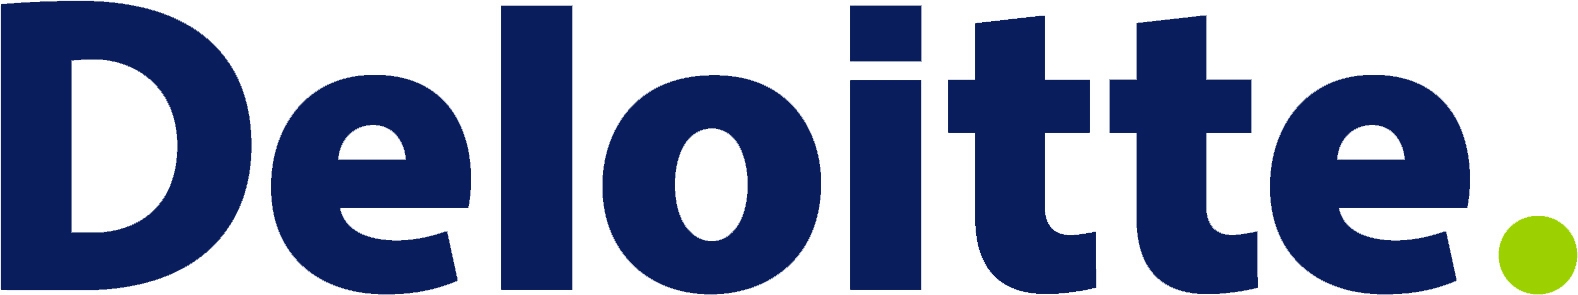 Deloitte LLP Company Logo